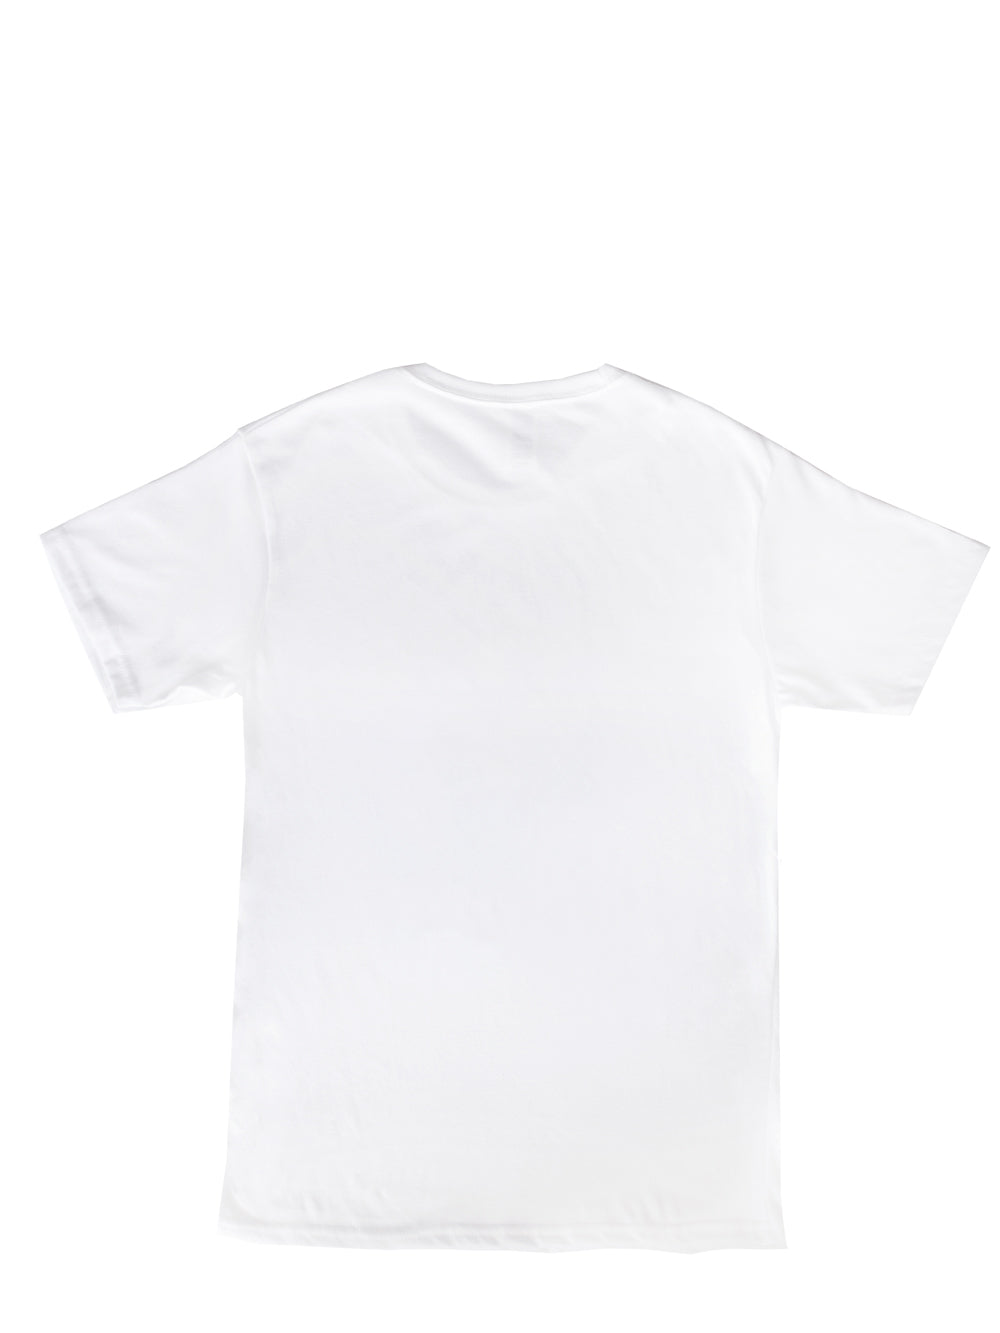 T-shirt de la marque Beurd en collaboration avec La Déesse des mouches à feu photo de l'arrière du t-shirt